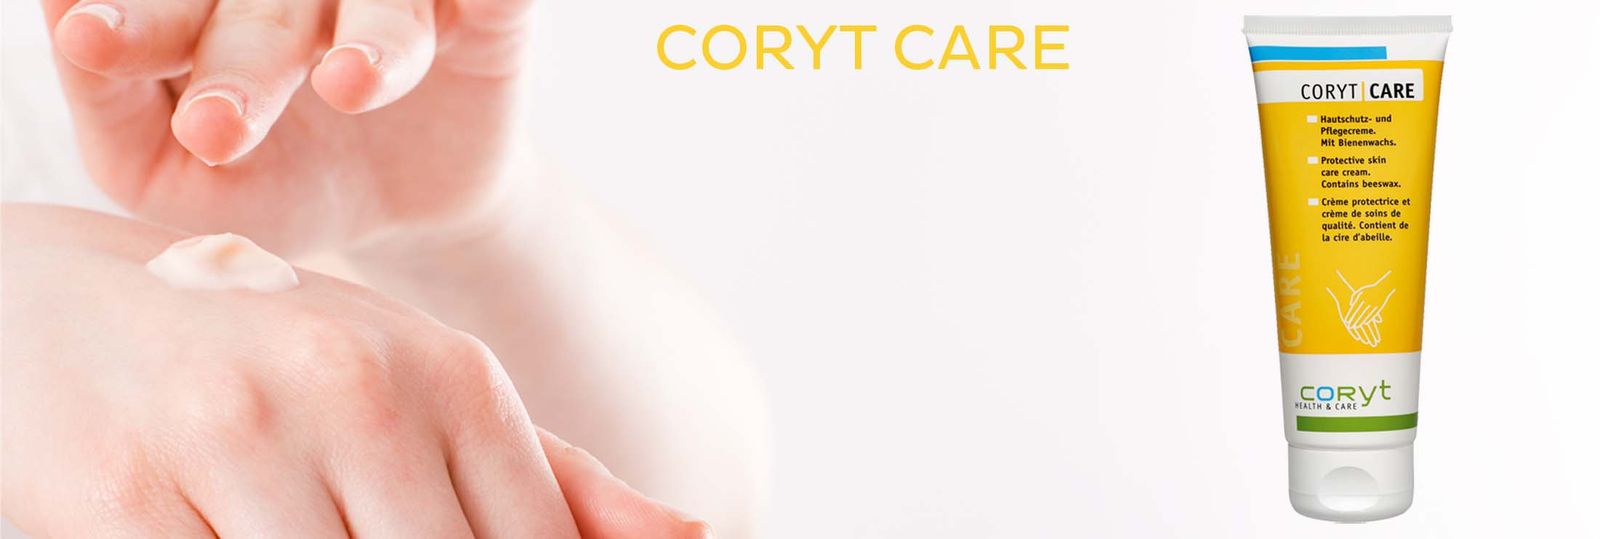 Coryt Care parfümfrei – Ihre Hände werden sich freuen!